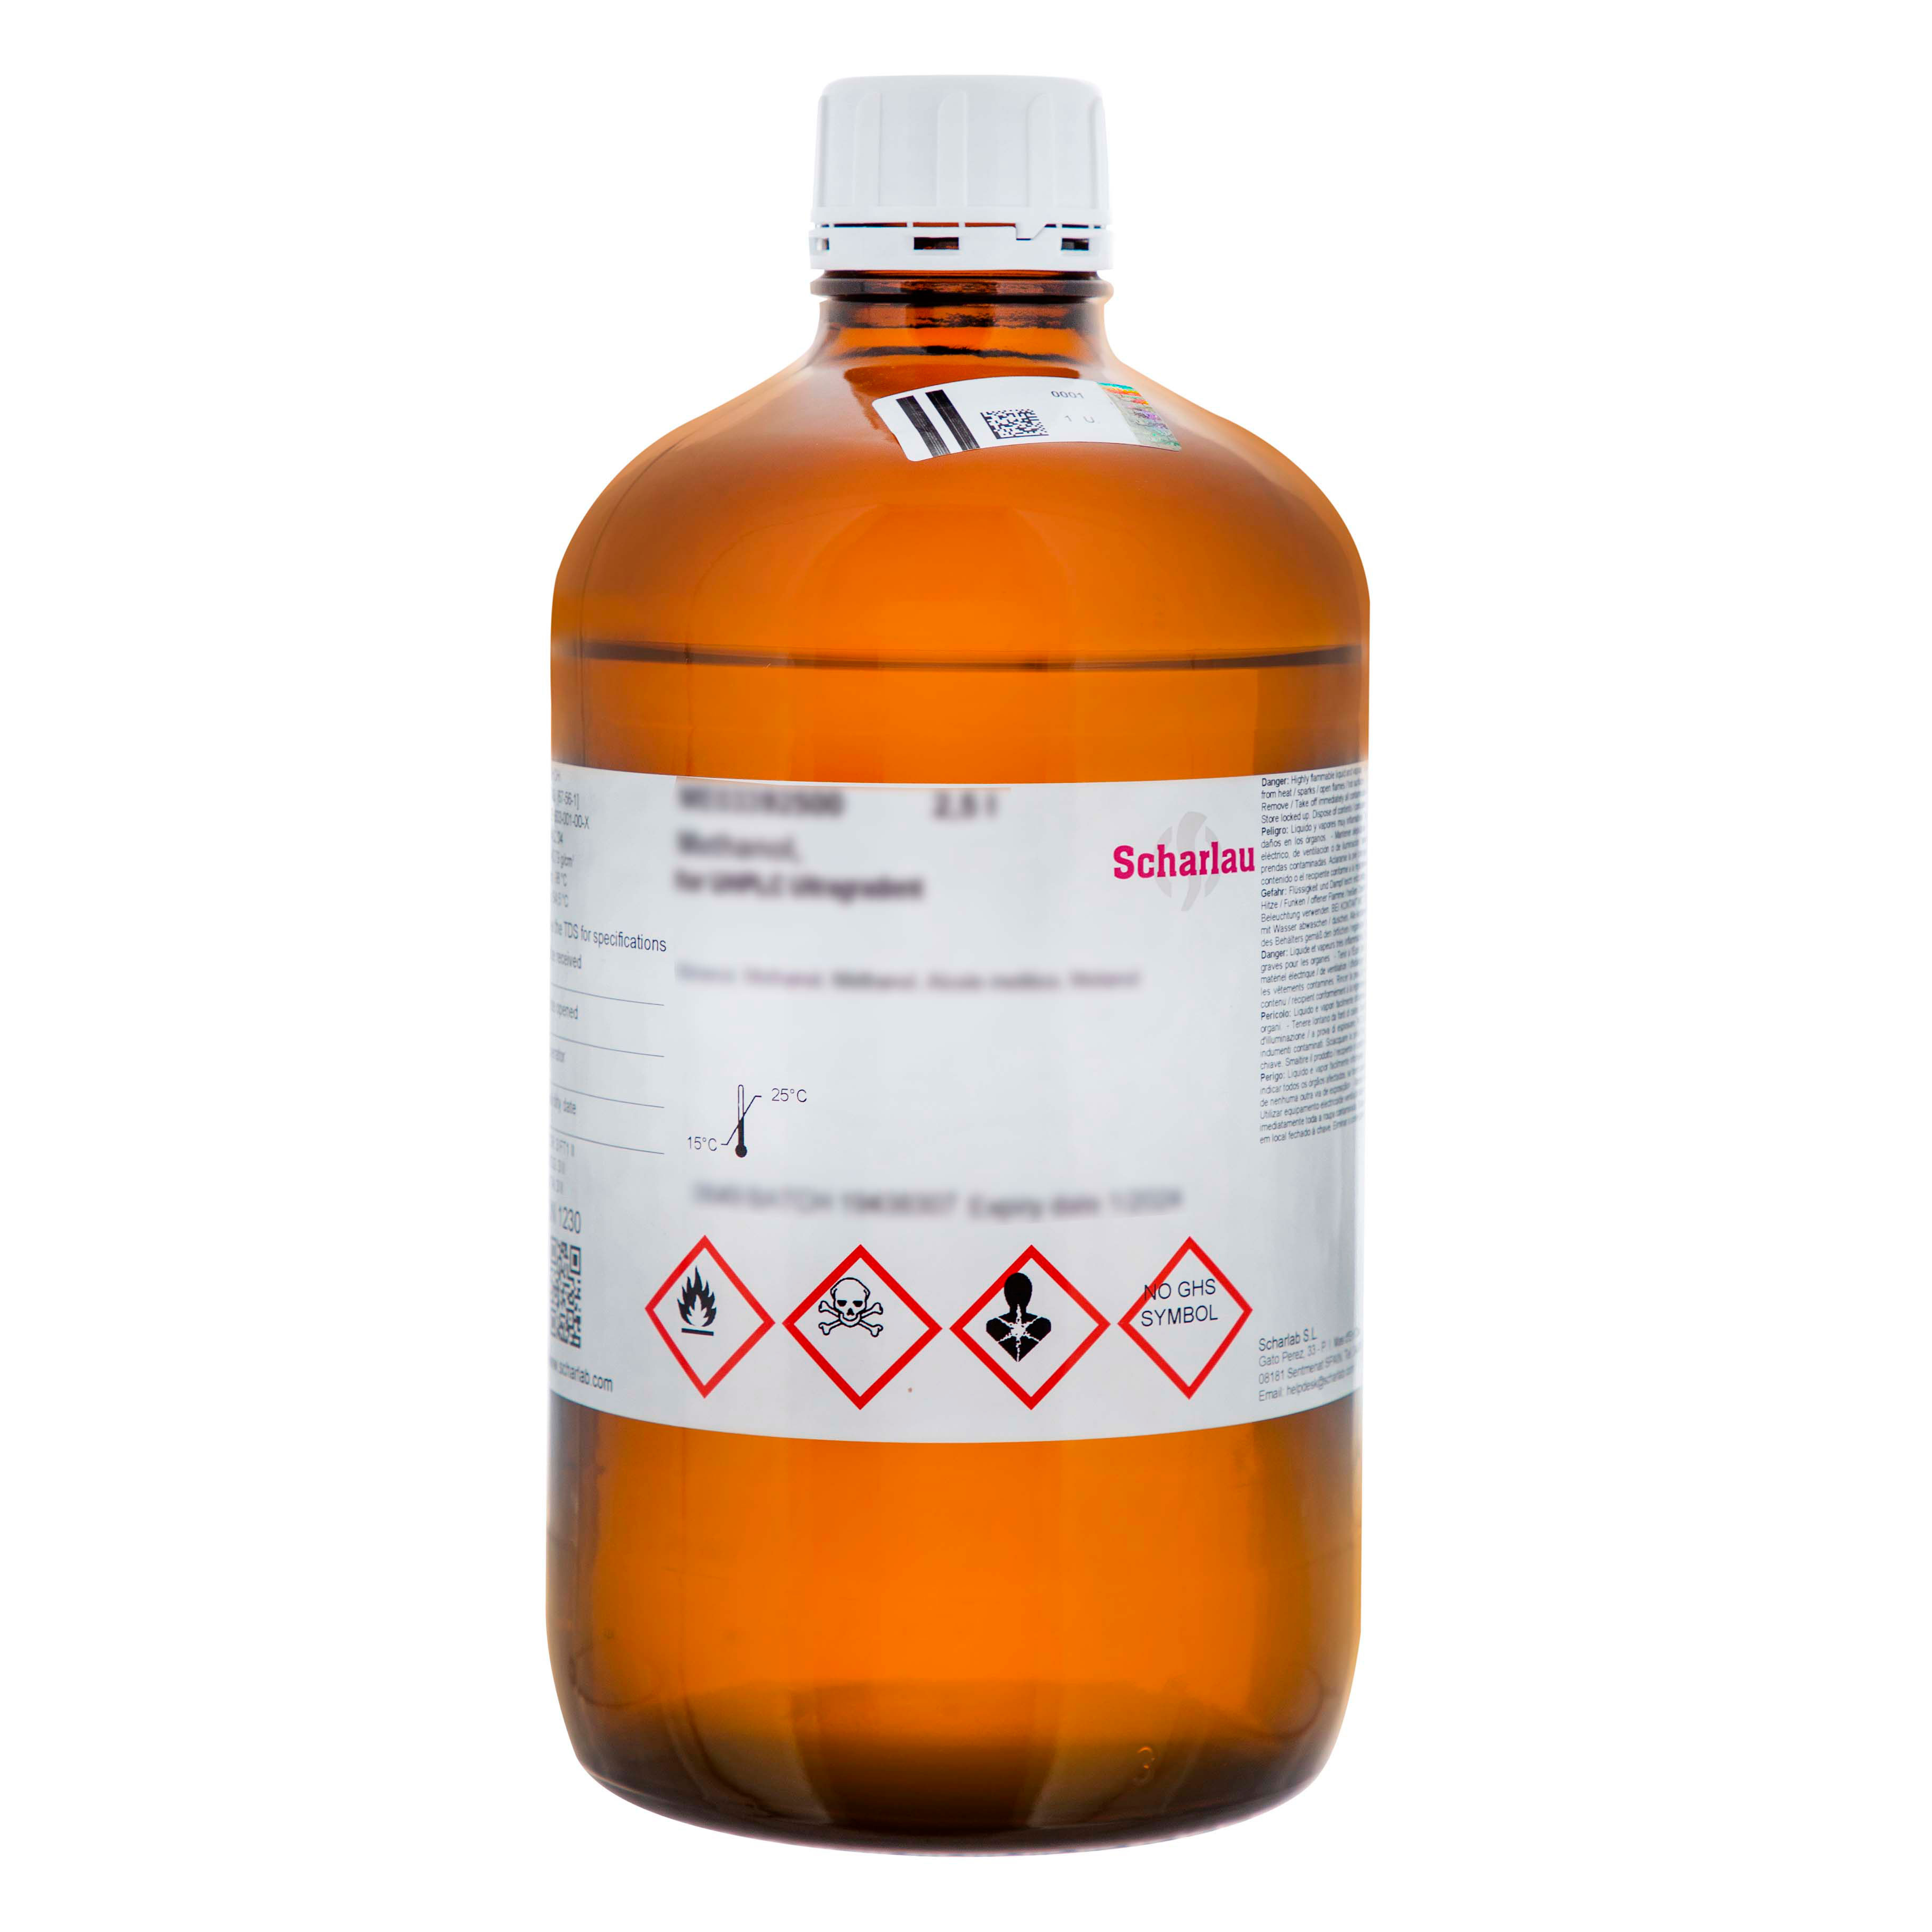 Oxidante 0,05 M, para síntesis de oligonucleótidos (Agua/Piridina/Yodo, 10/90/1,27, v/v/p, ÄKTA® y OligoPilot®)